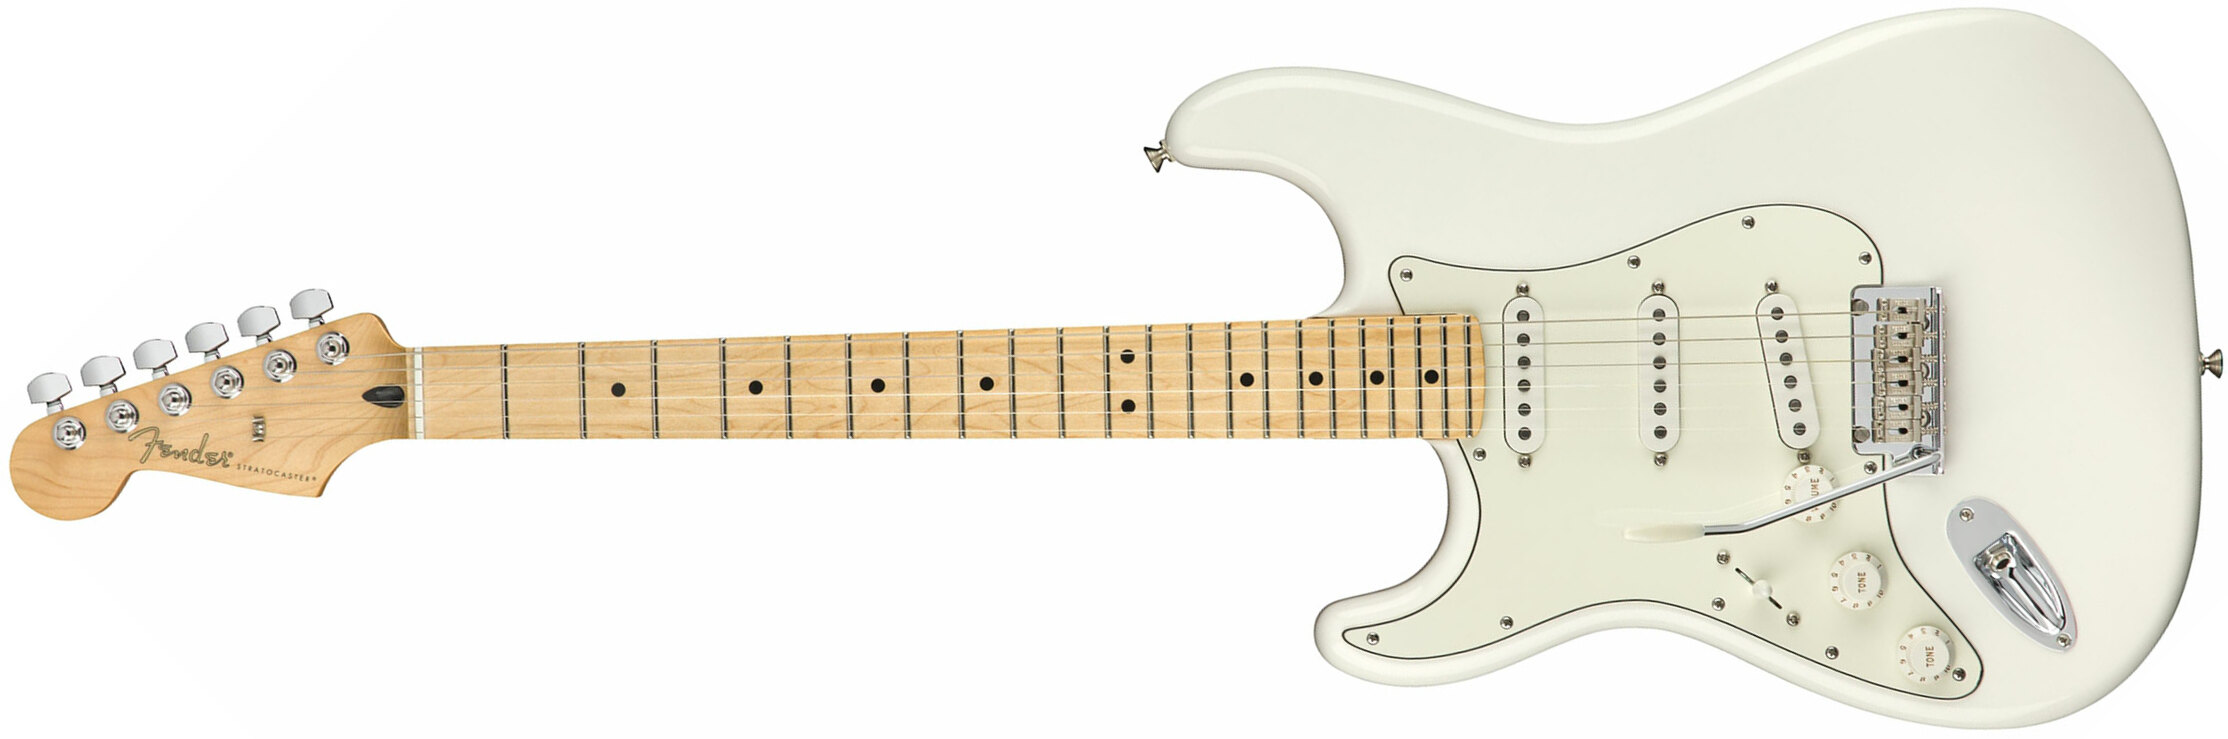 Fender Strat Player Lh Gaucher Mex Sss Mn - Polar White - E-Gitarre für Linkshänder - Main picture